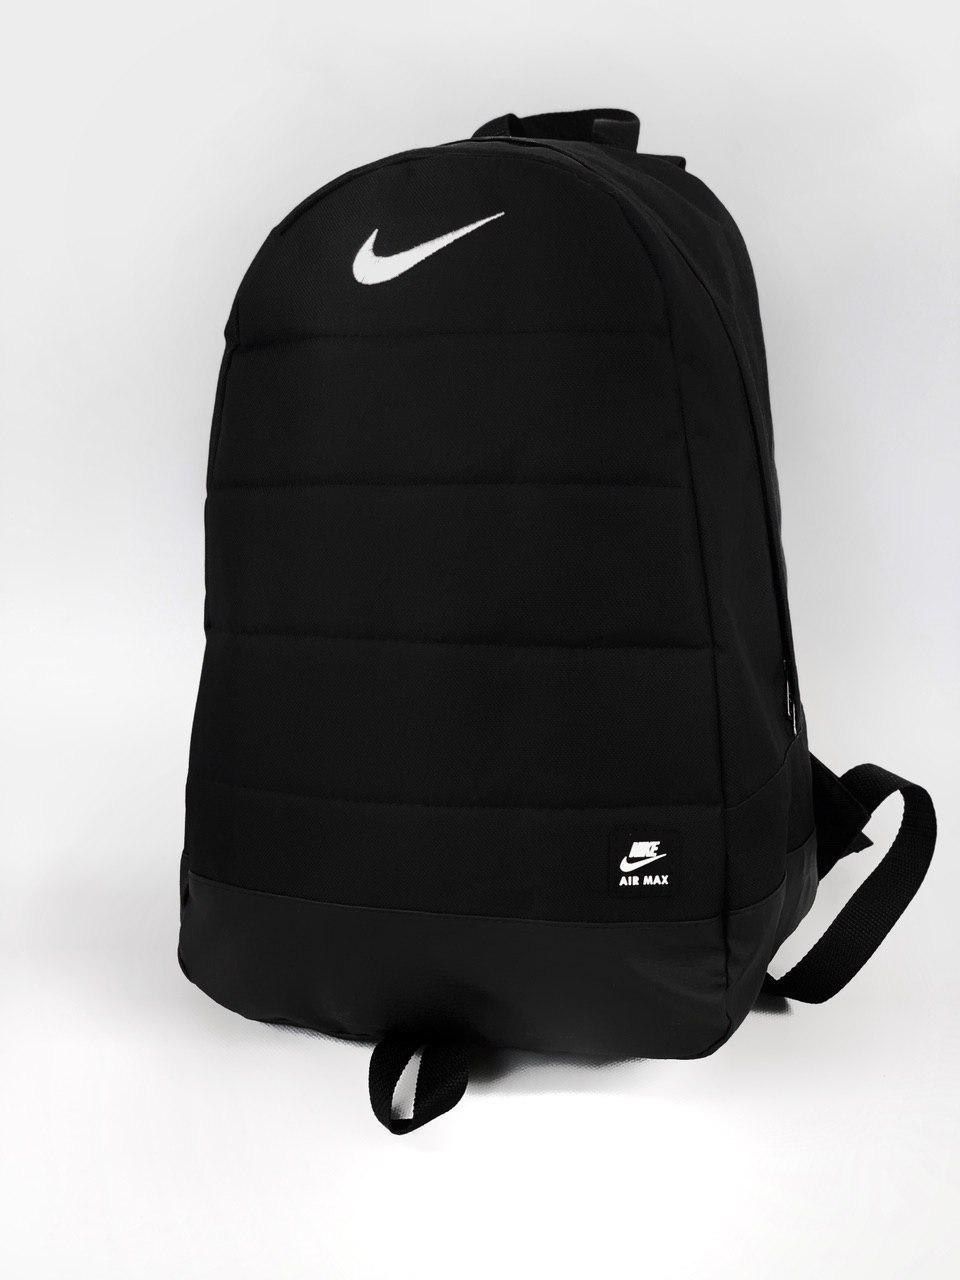 Городской рюкзак Nike Air черный мужской, спортивный портфель найк